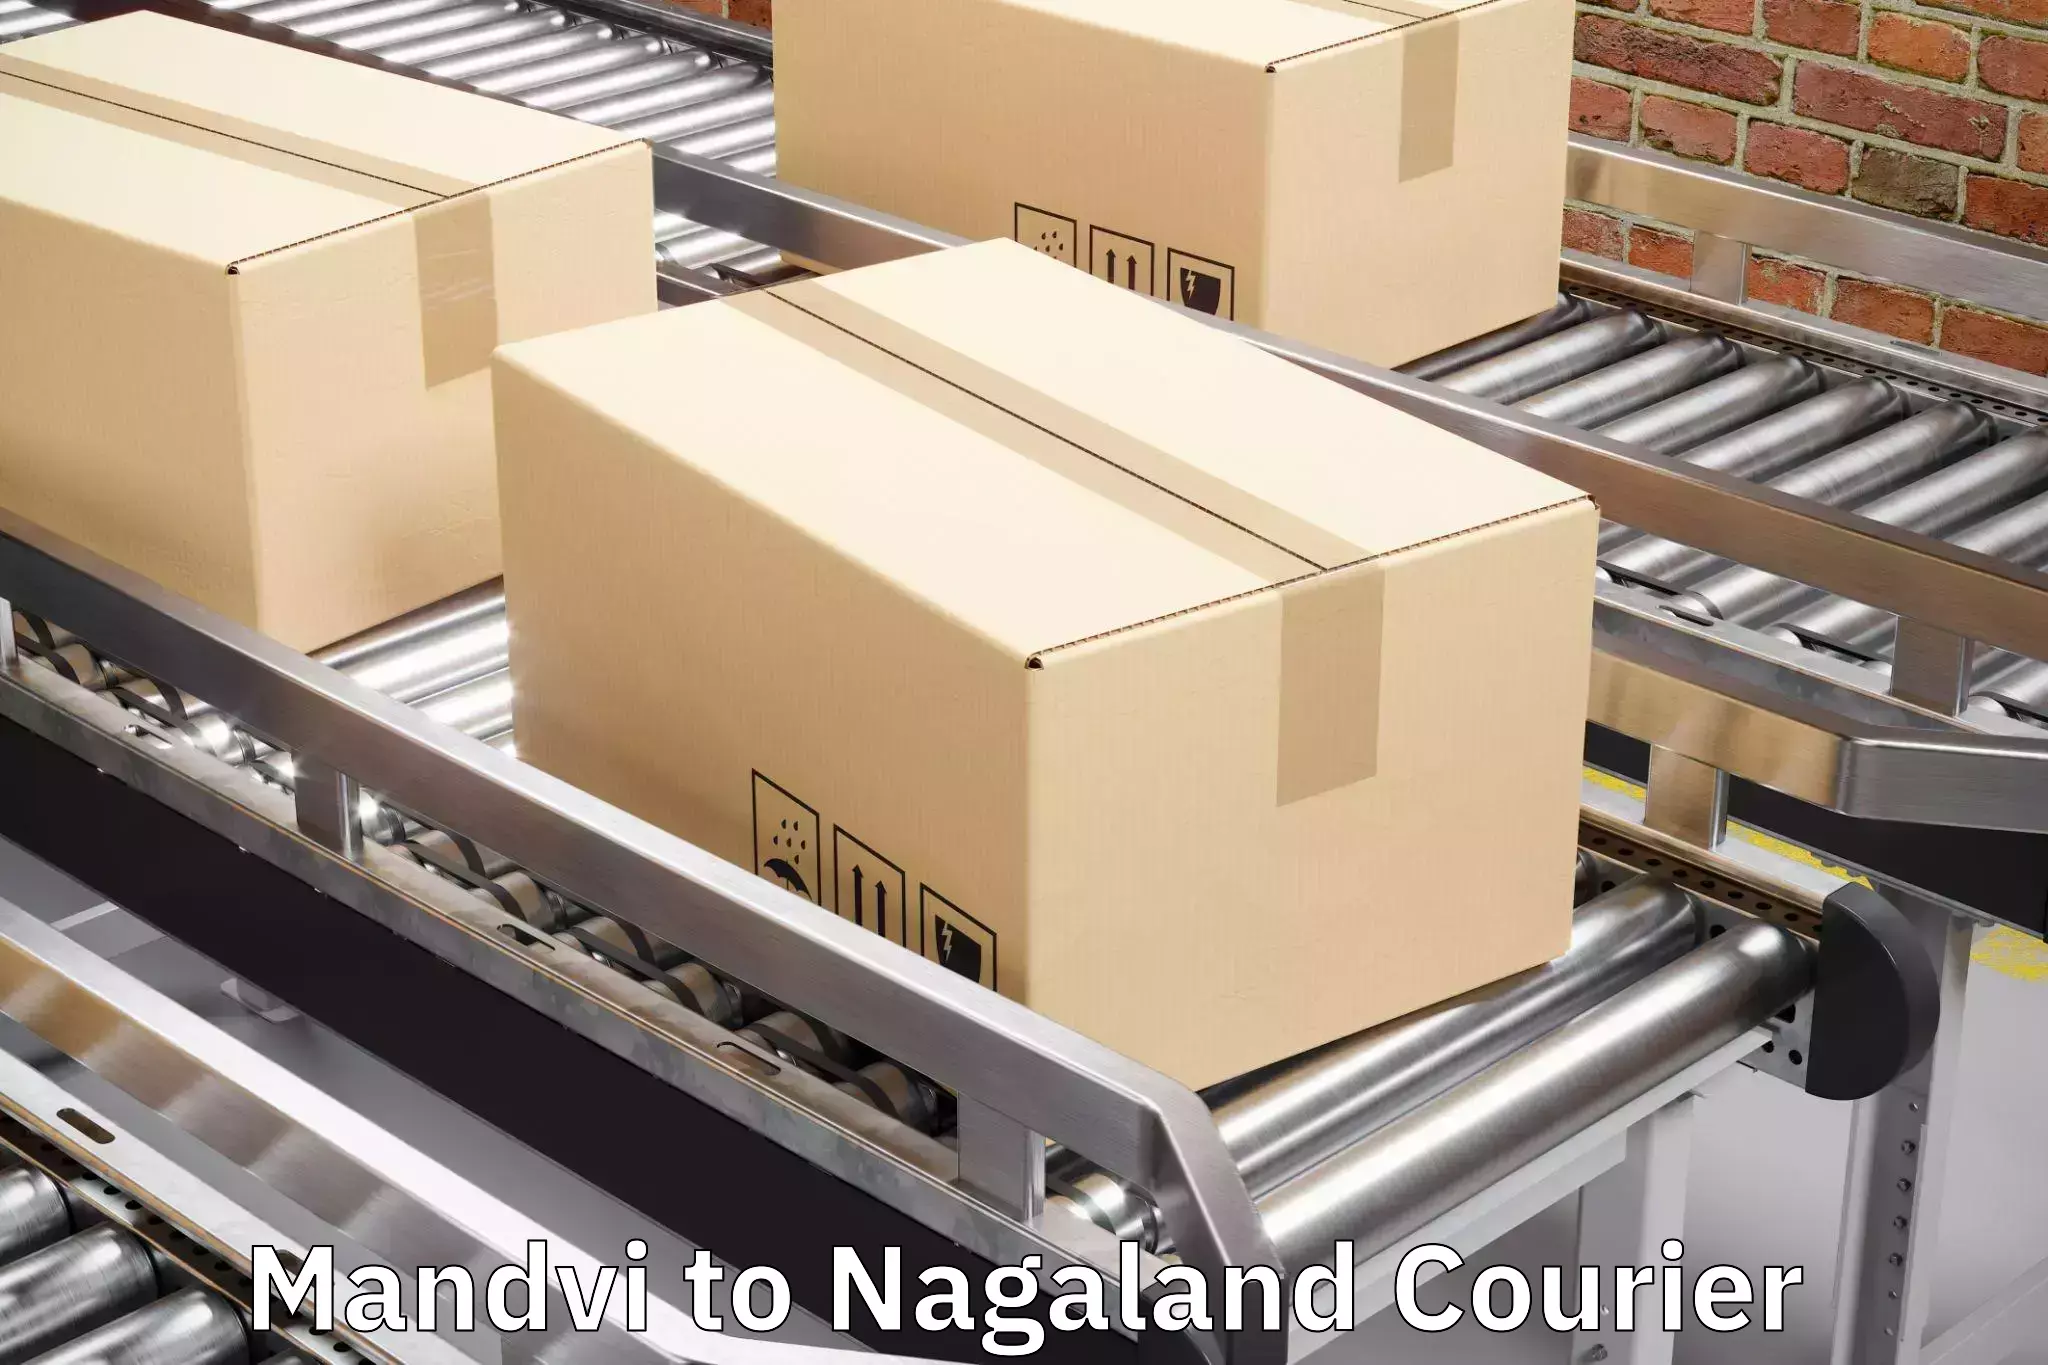 Baggage delivery management Mandvi to NIT Nagaland